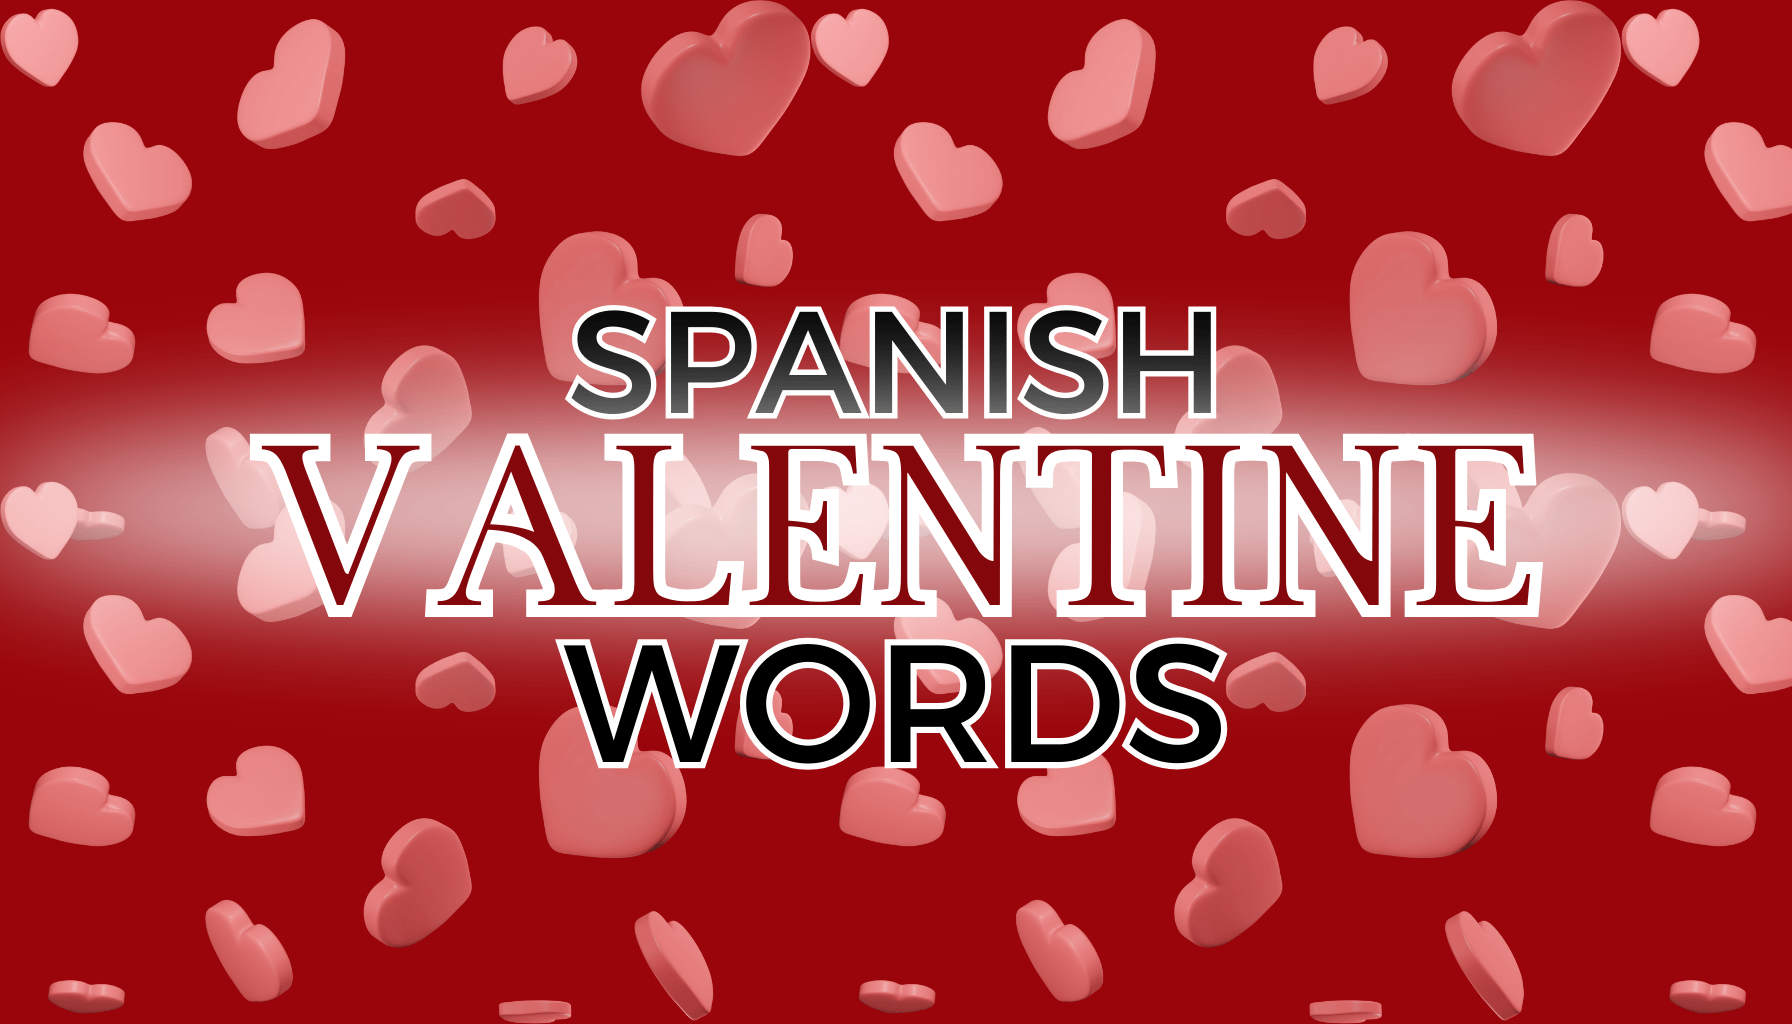 Spanish Valentine Words